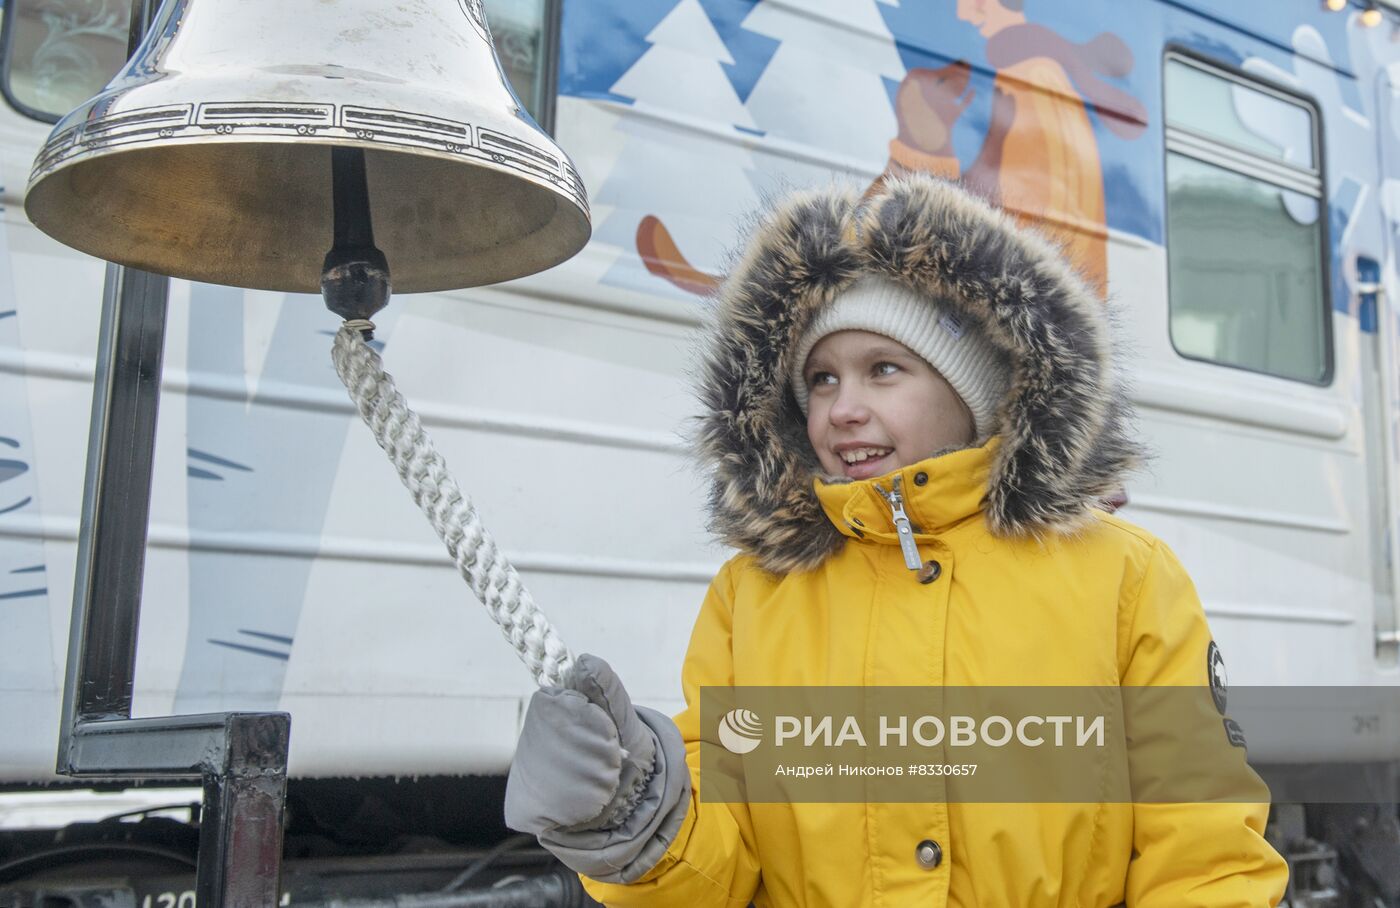 Прибытие поезда Деда Мороза в Пермь